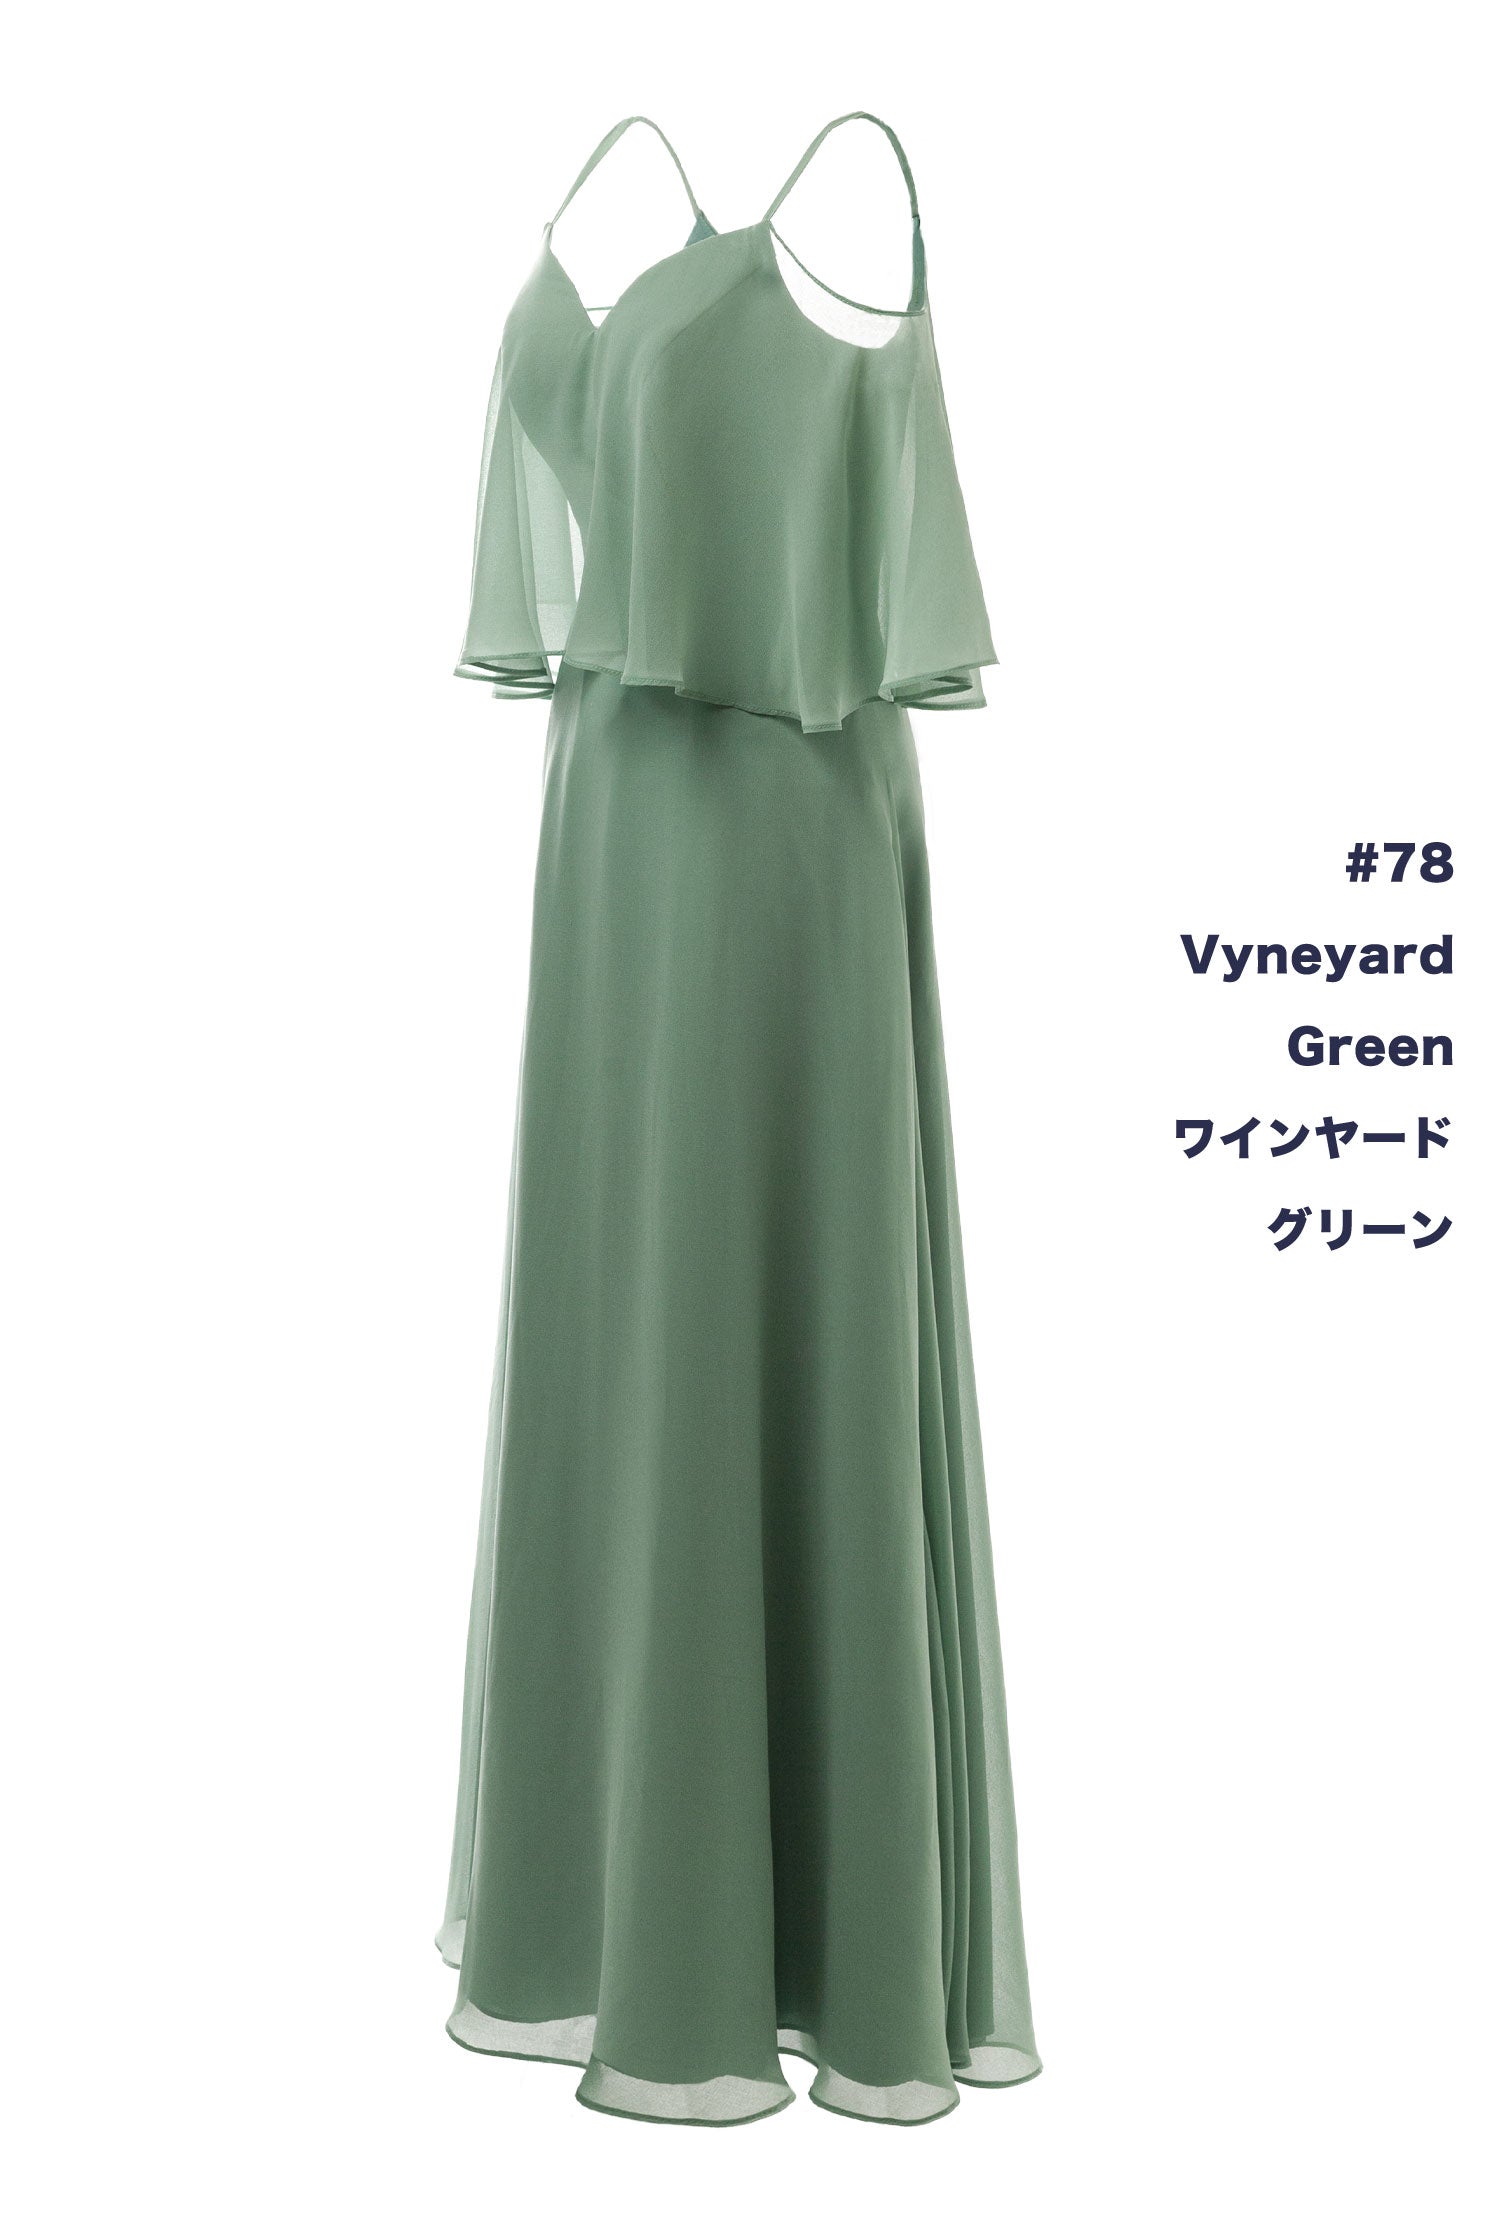 NV1015 2Way Chiffon Long Dress 150 Colors